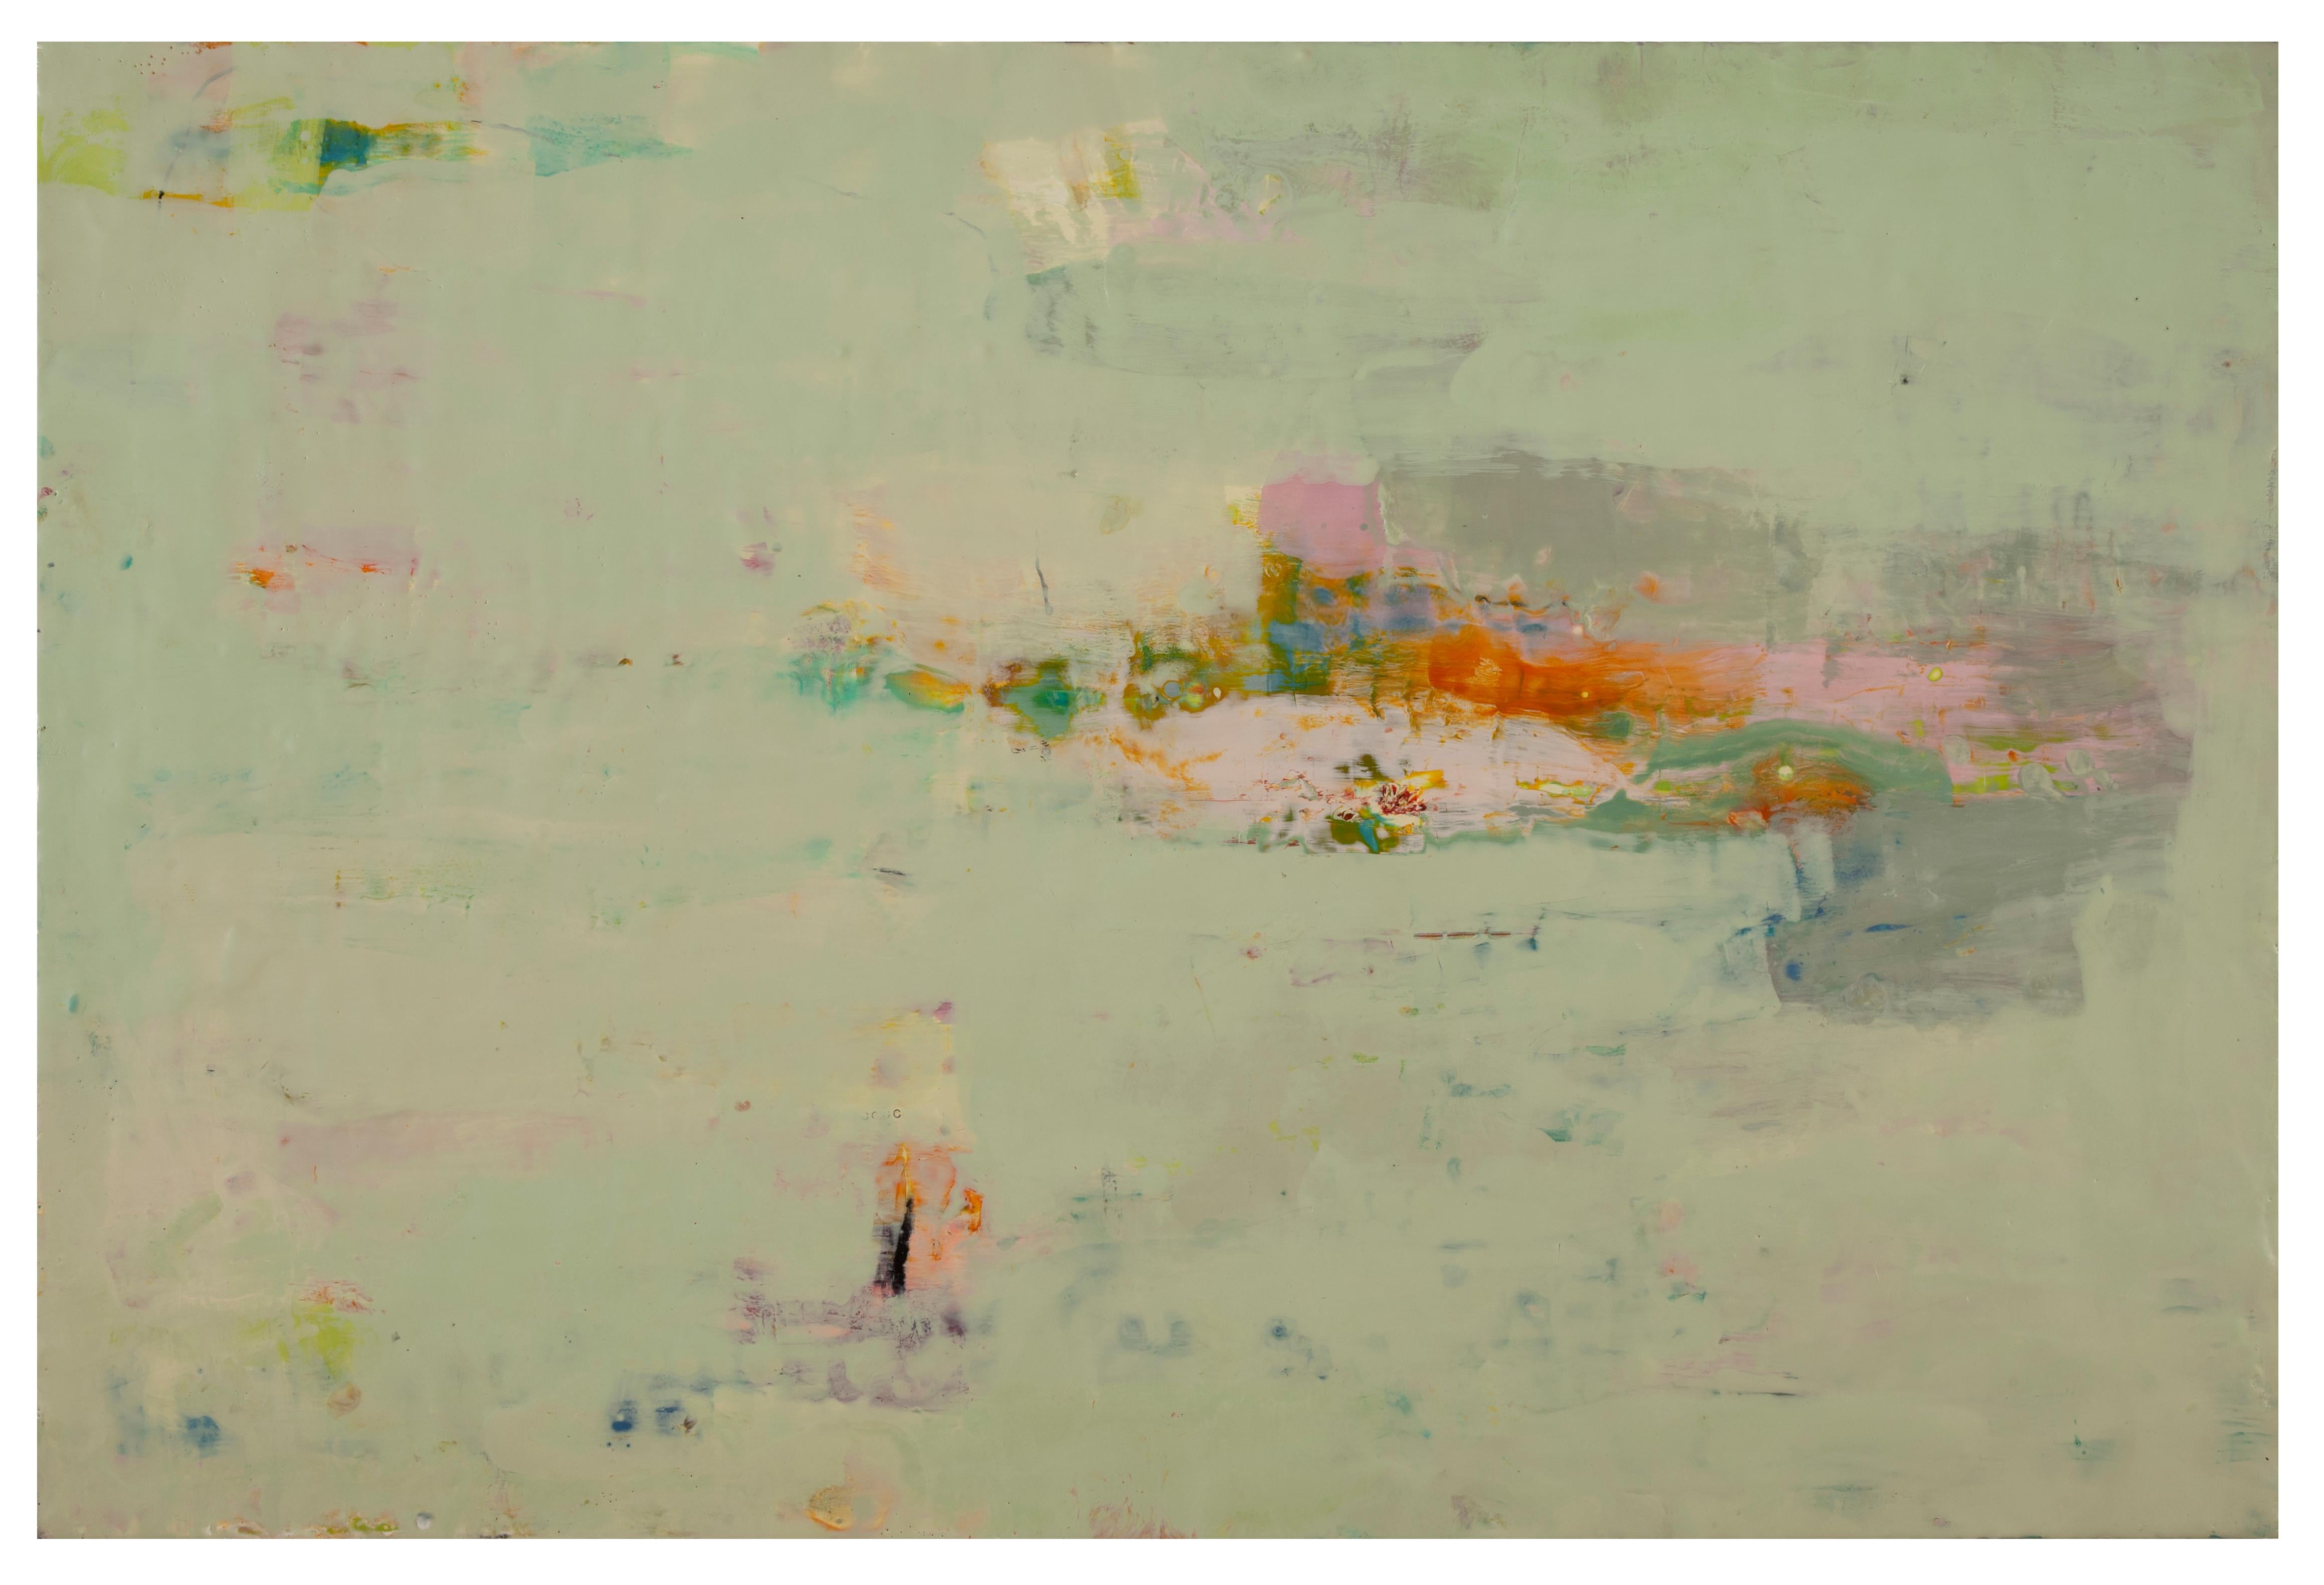 Abstract Painting Lisa Pressman - « At the Edge 2 », encaustique sur panneau